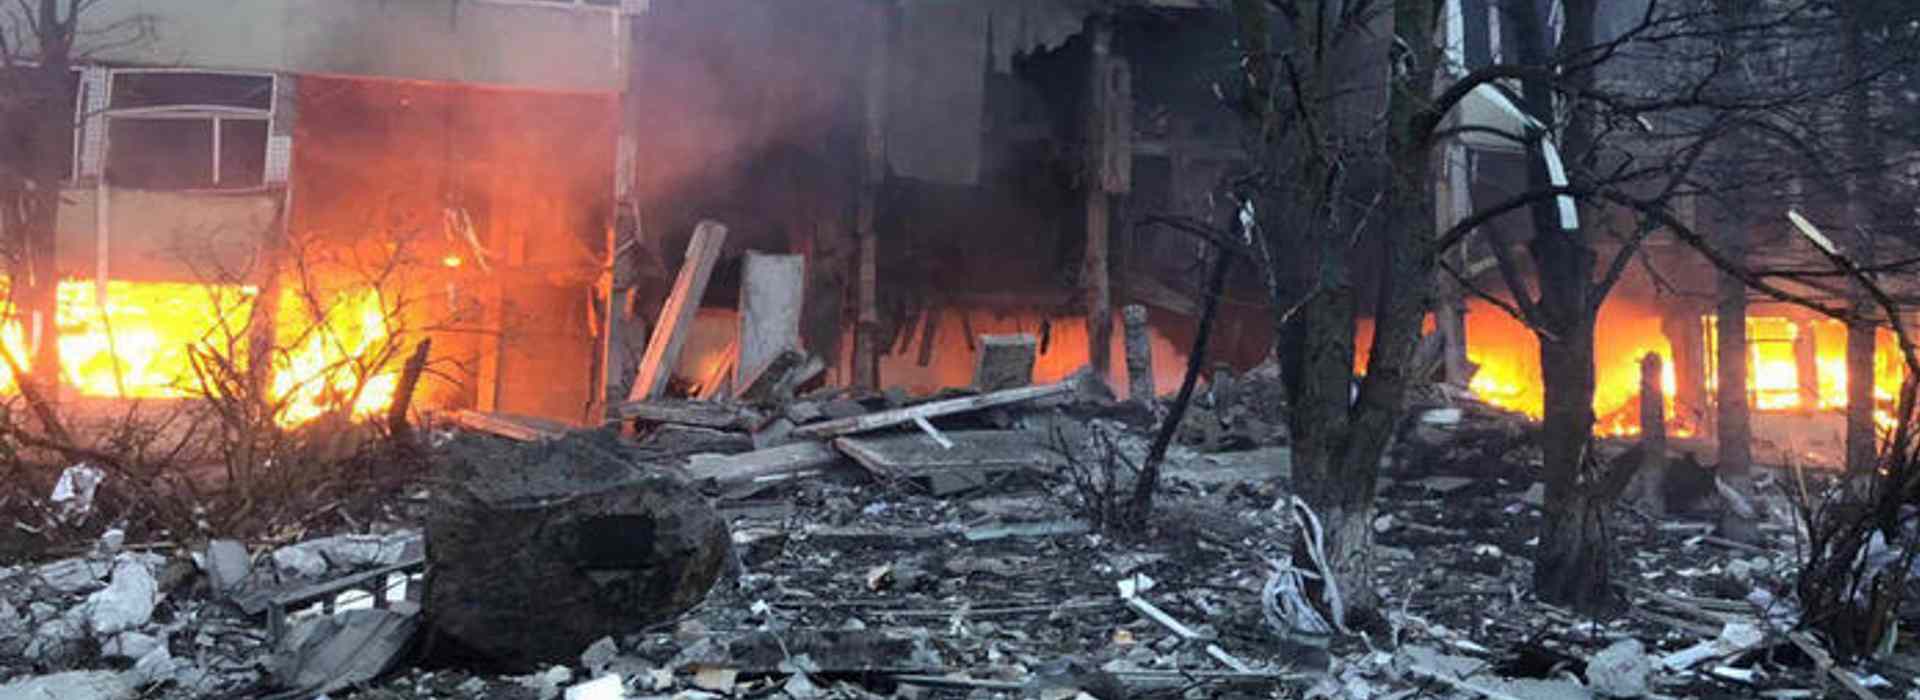 Kiev: 11 persone uccise da attacchi missilistici russi. Ucraina "laboratorio di battaglia" per armi iraniane